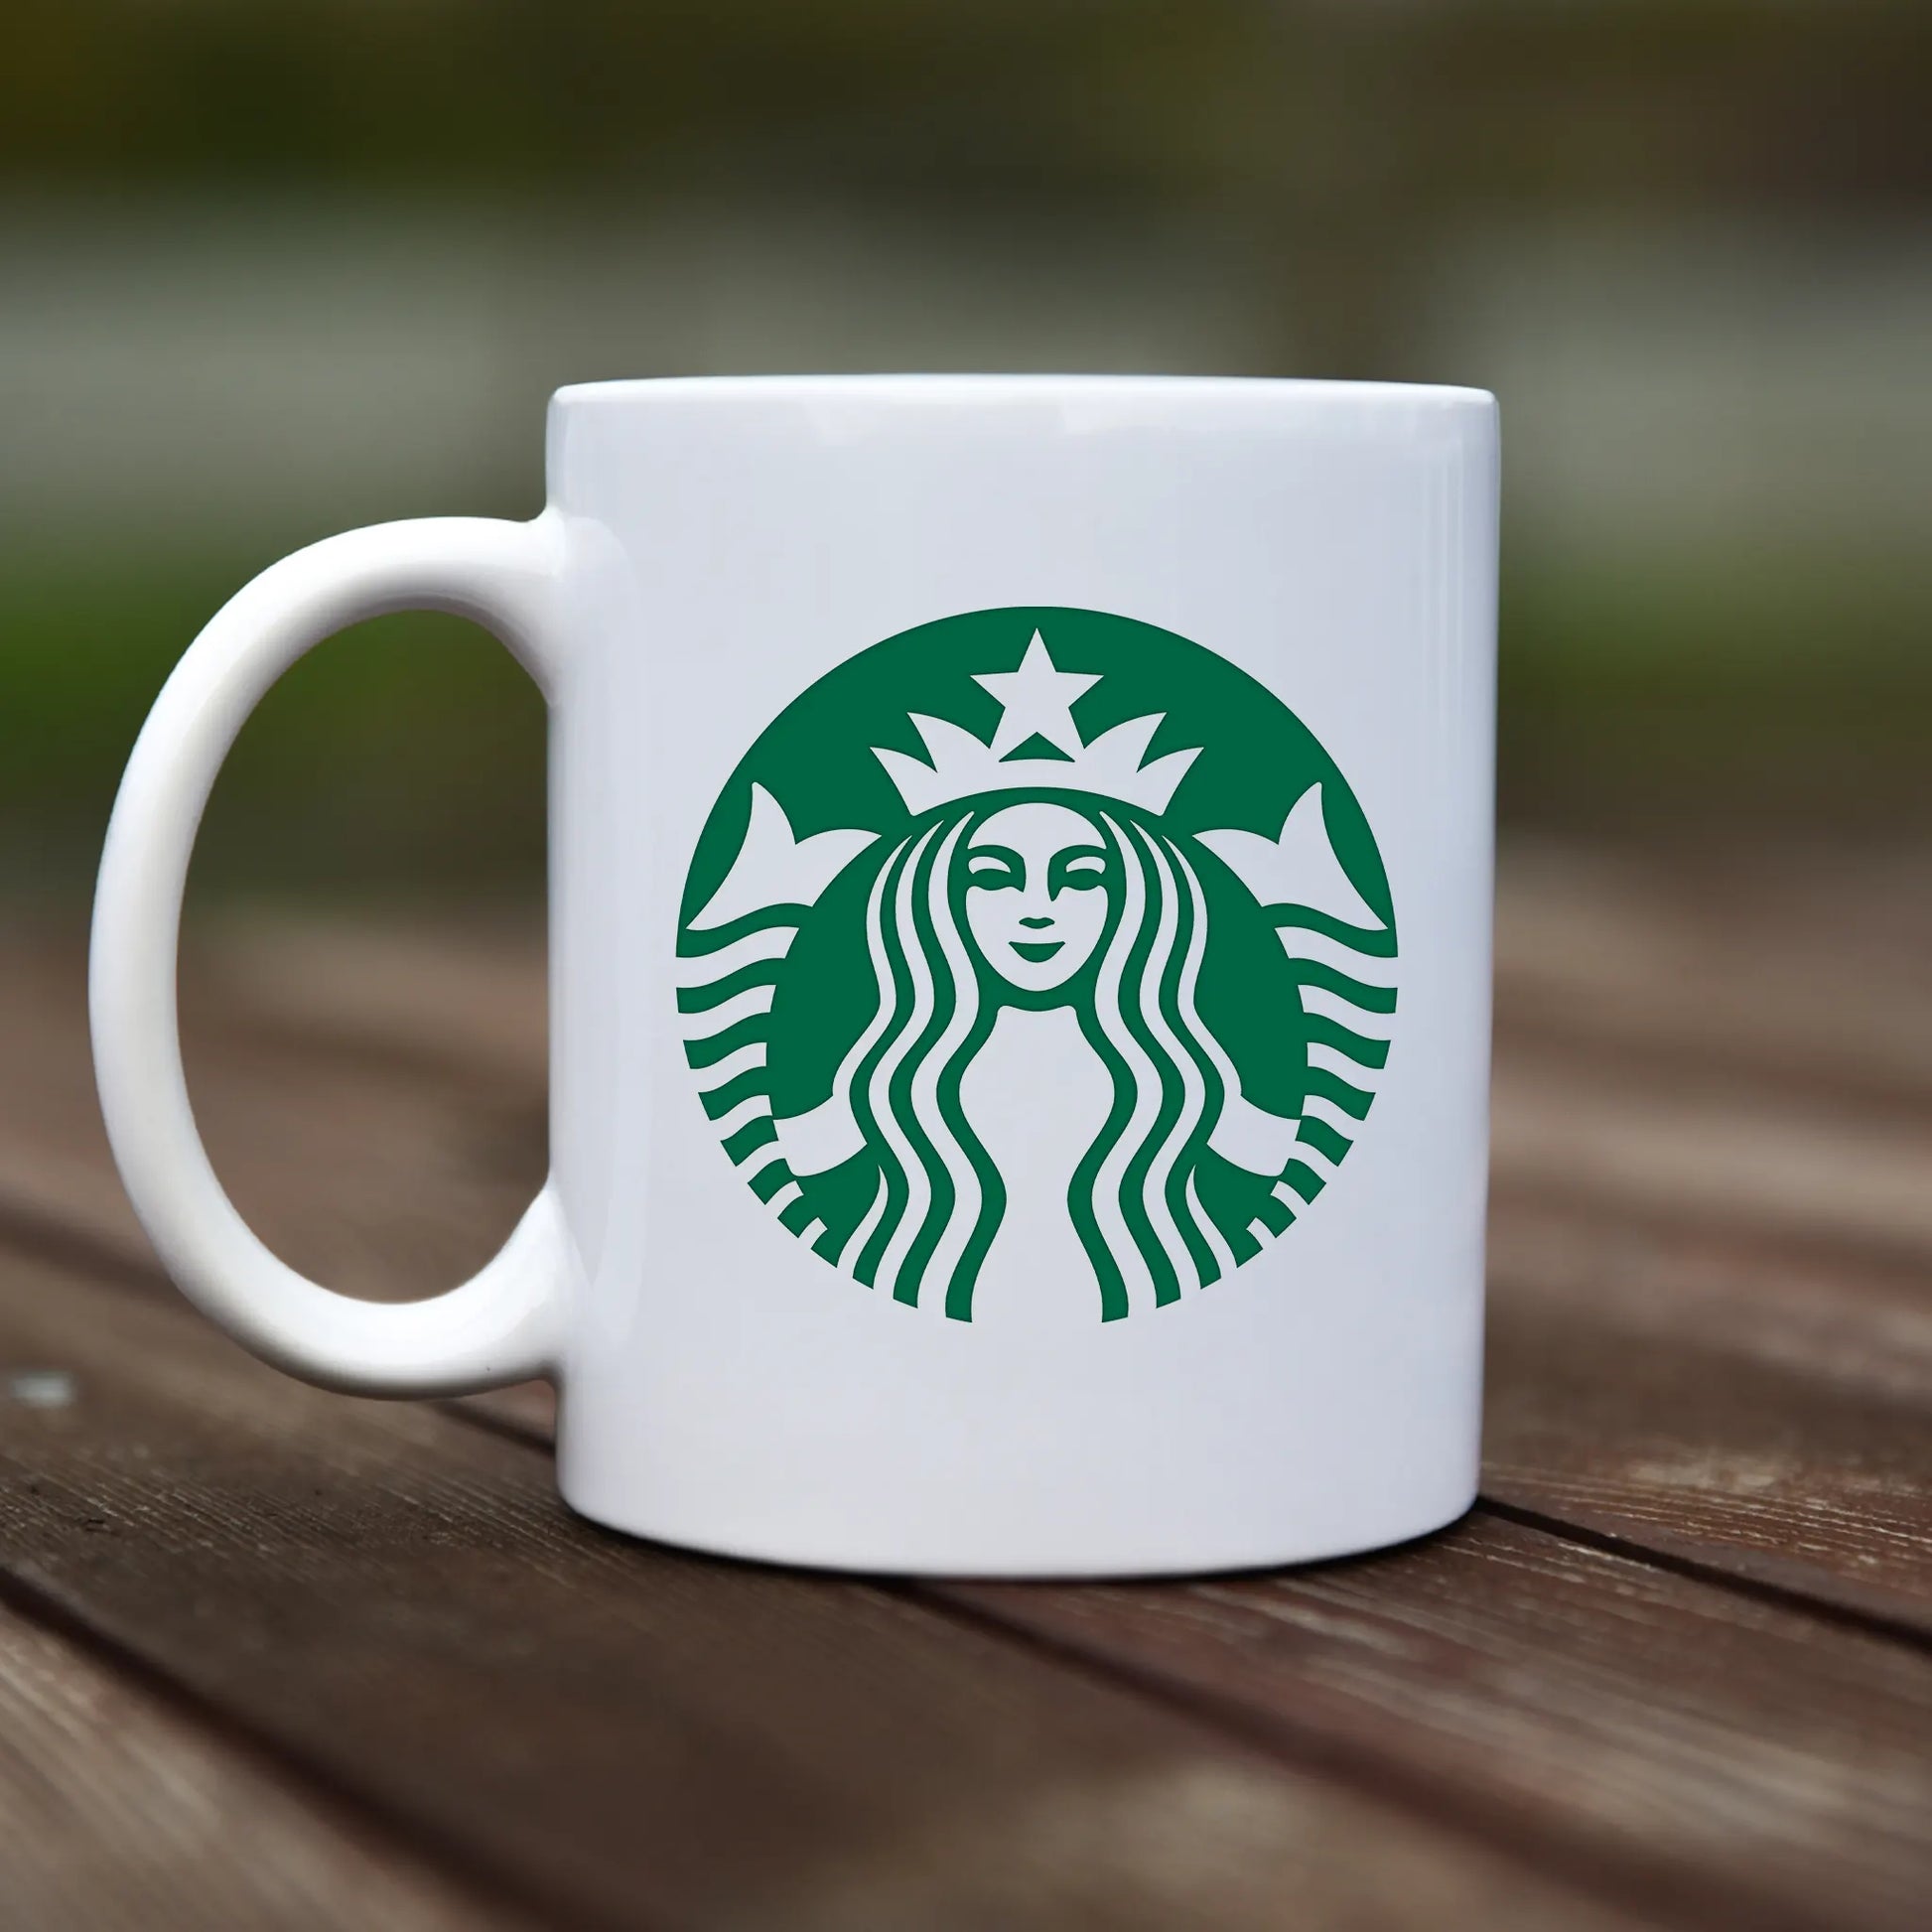 Hrnček - Starbucks - rvdesignprint